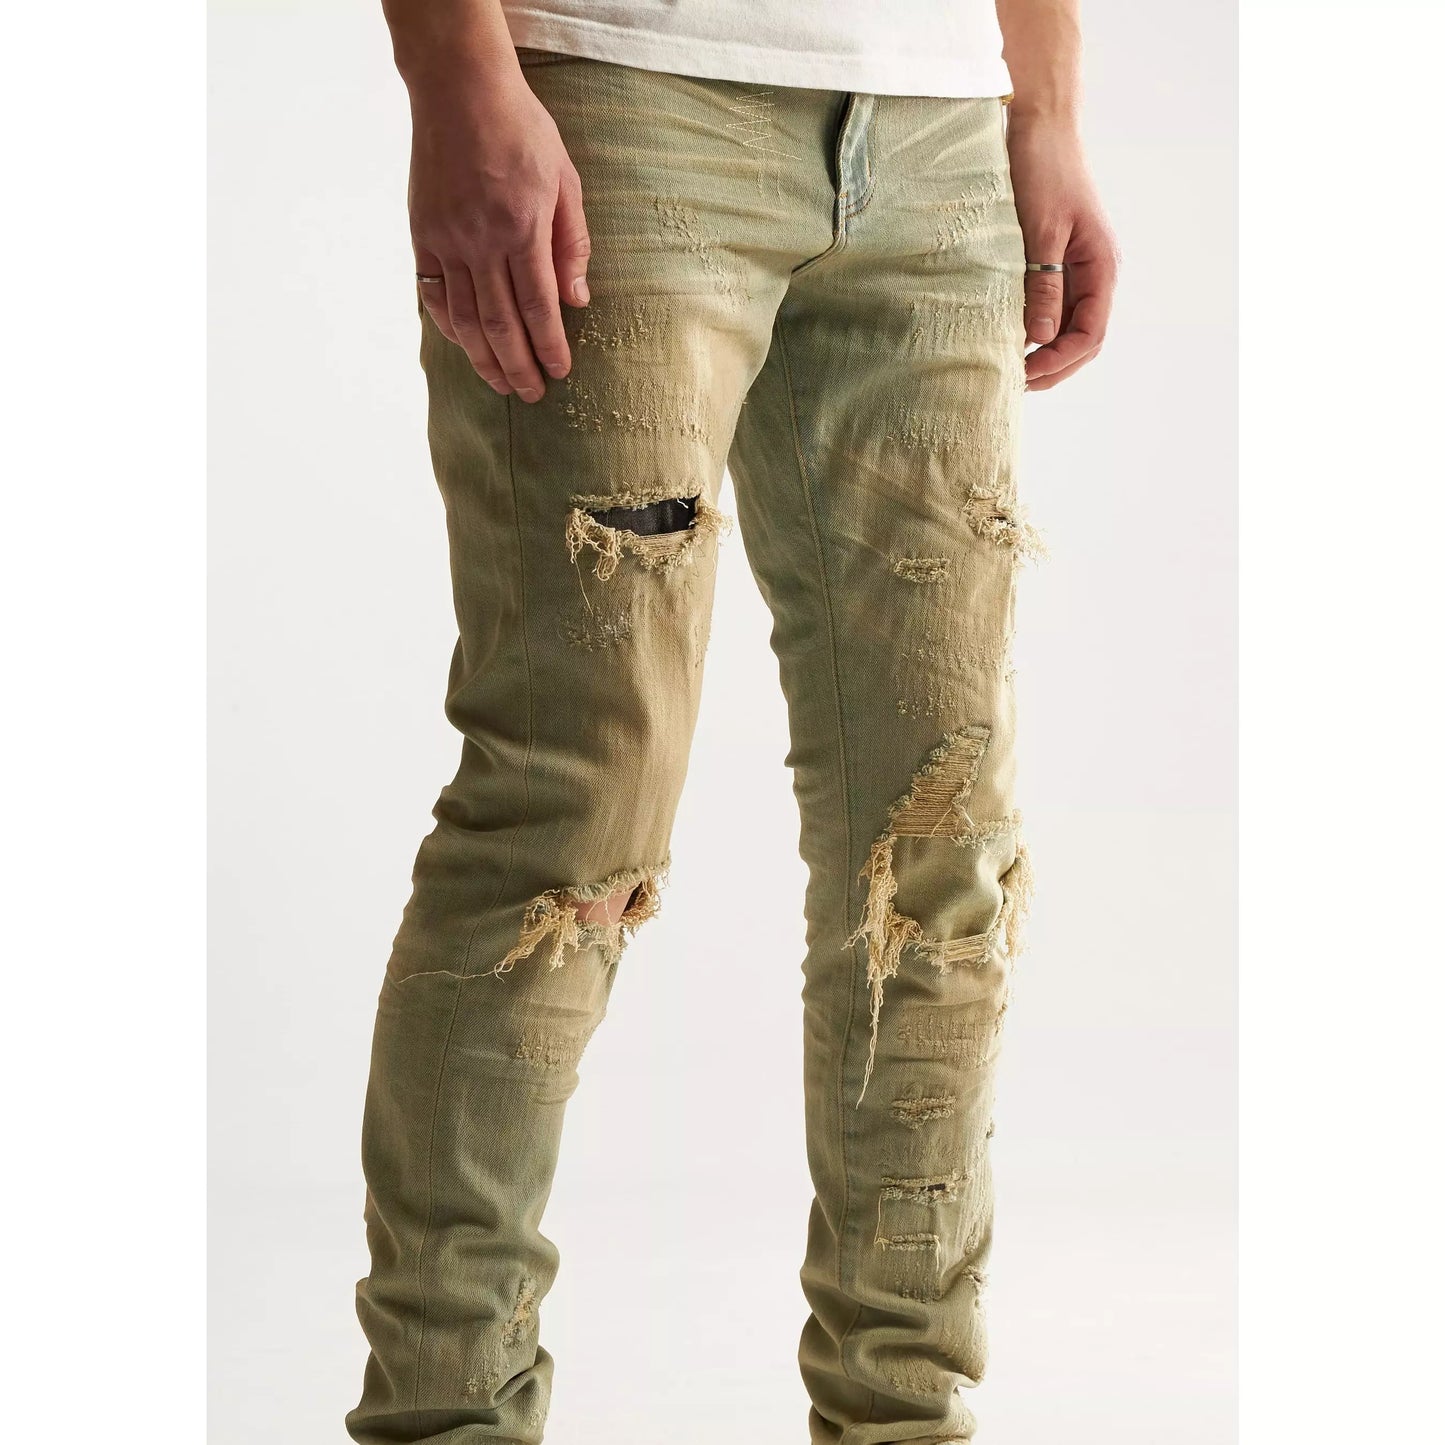 Embellish Felix Light Sand Washed Denim Jeans (EMBSP122-106)